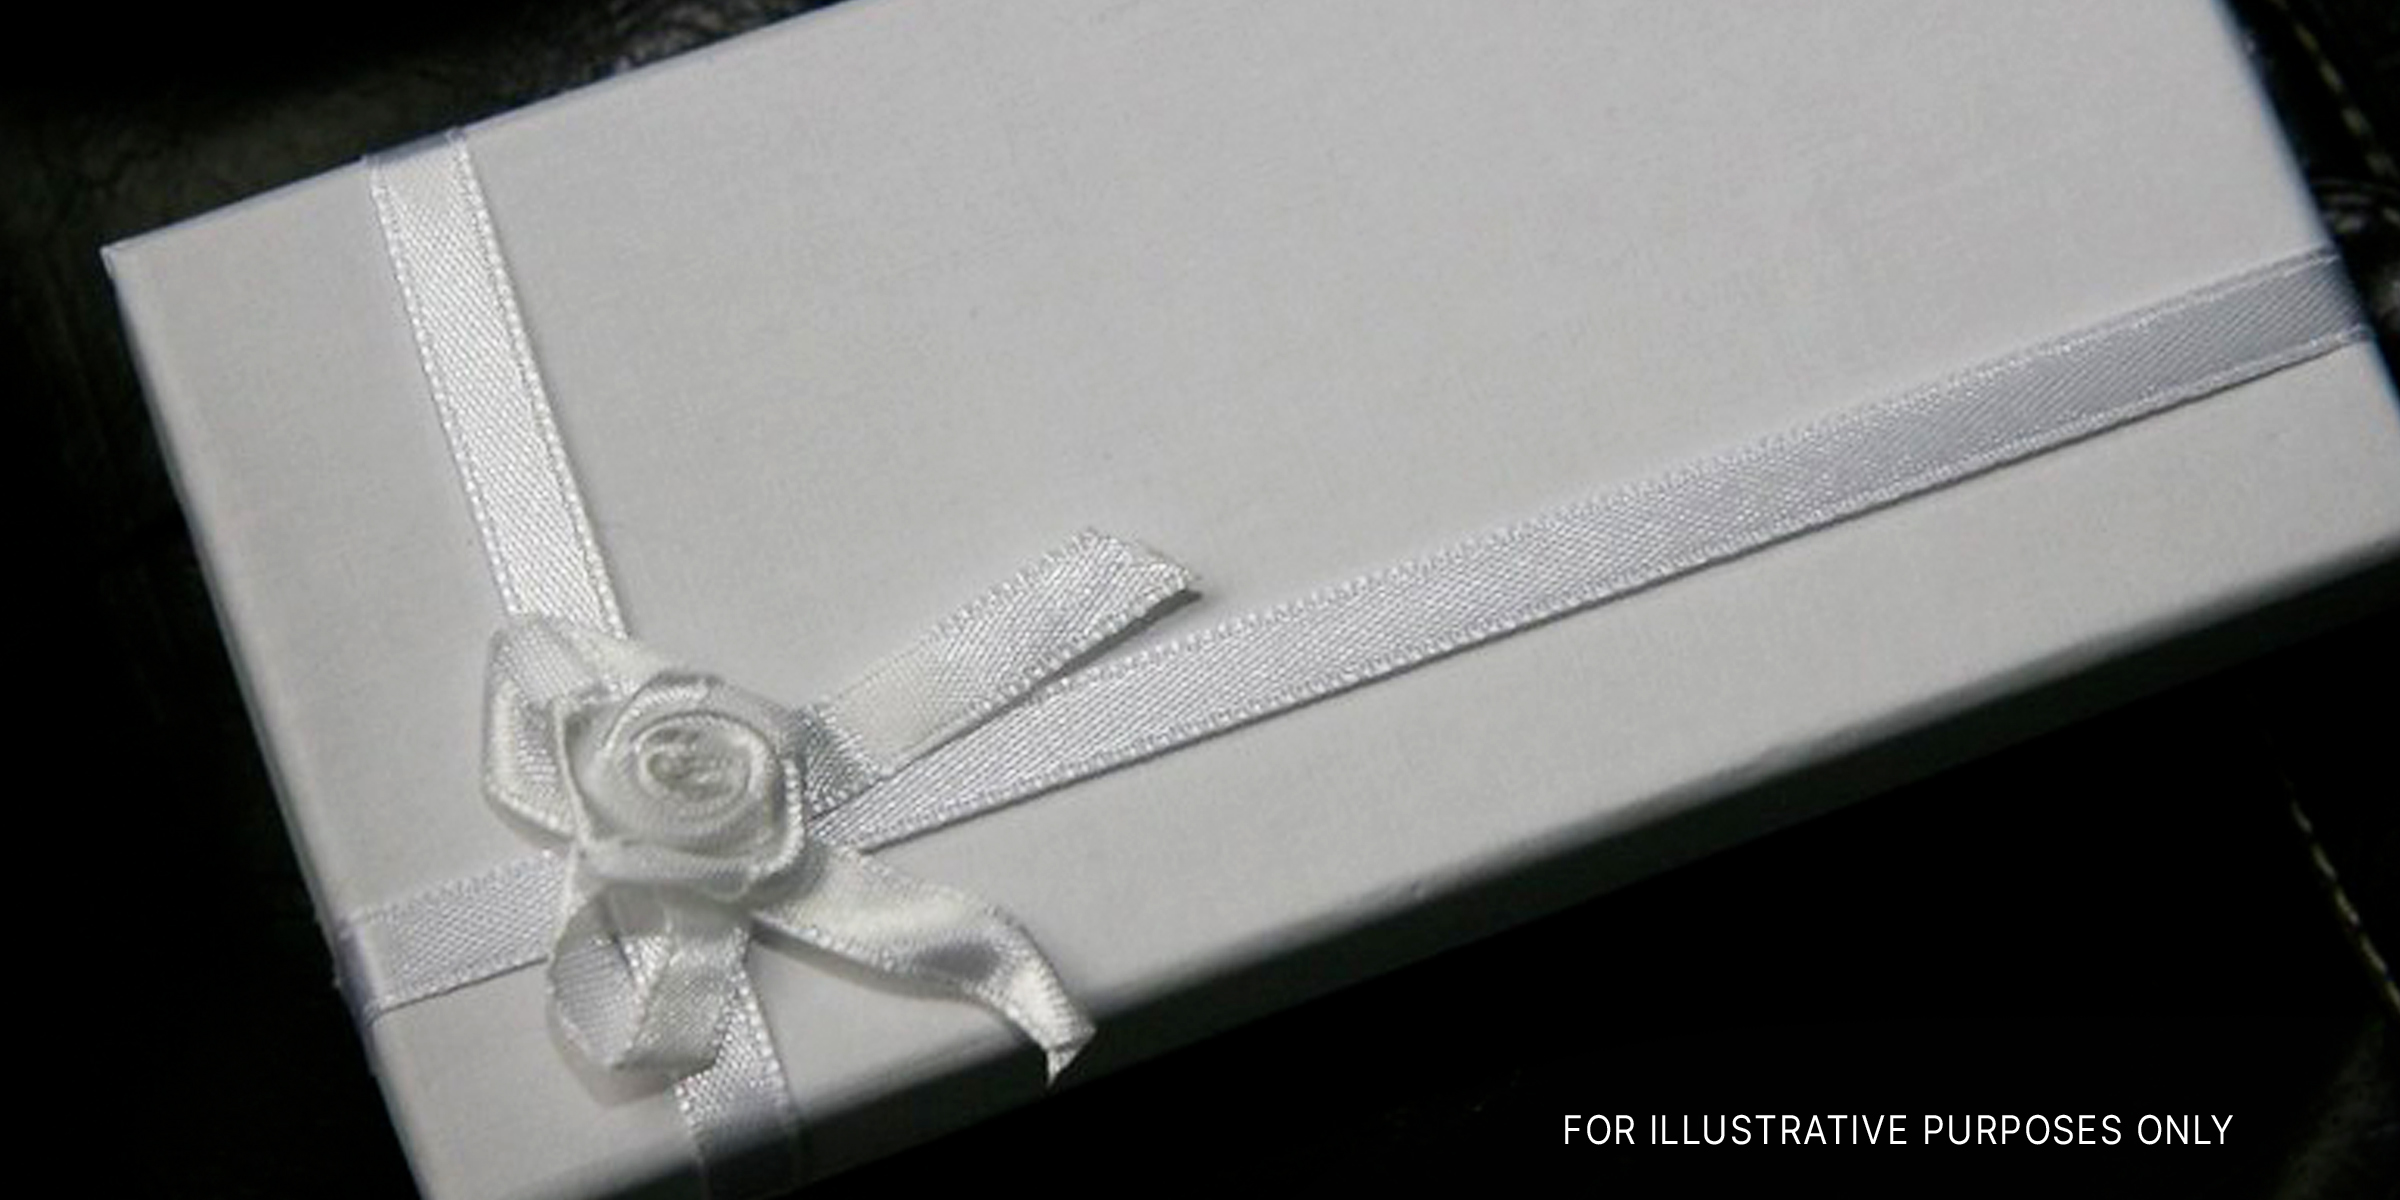 Eine verpackte Geschenkbox | Quelle: Flickr.com